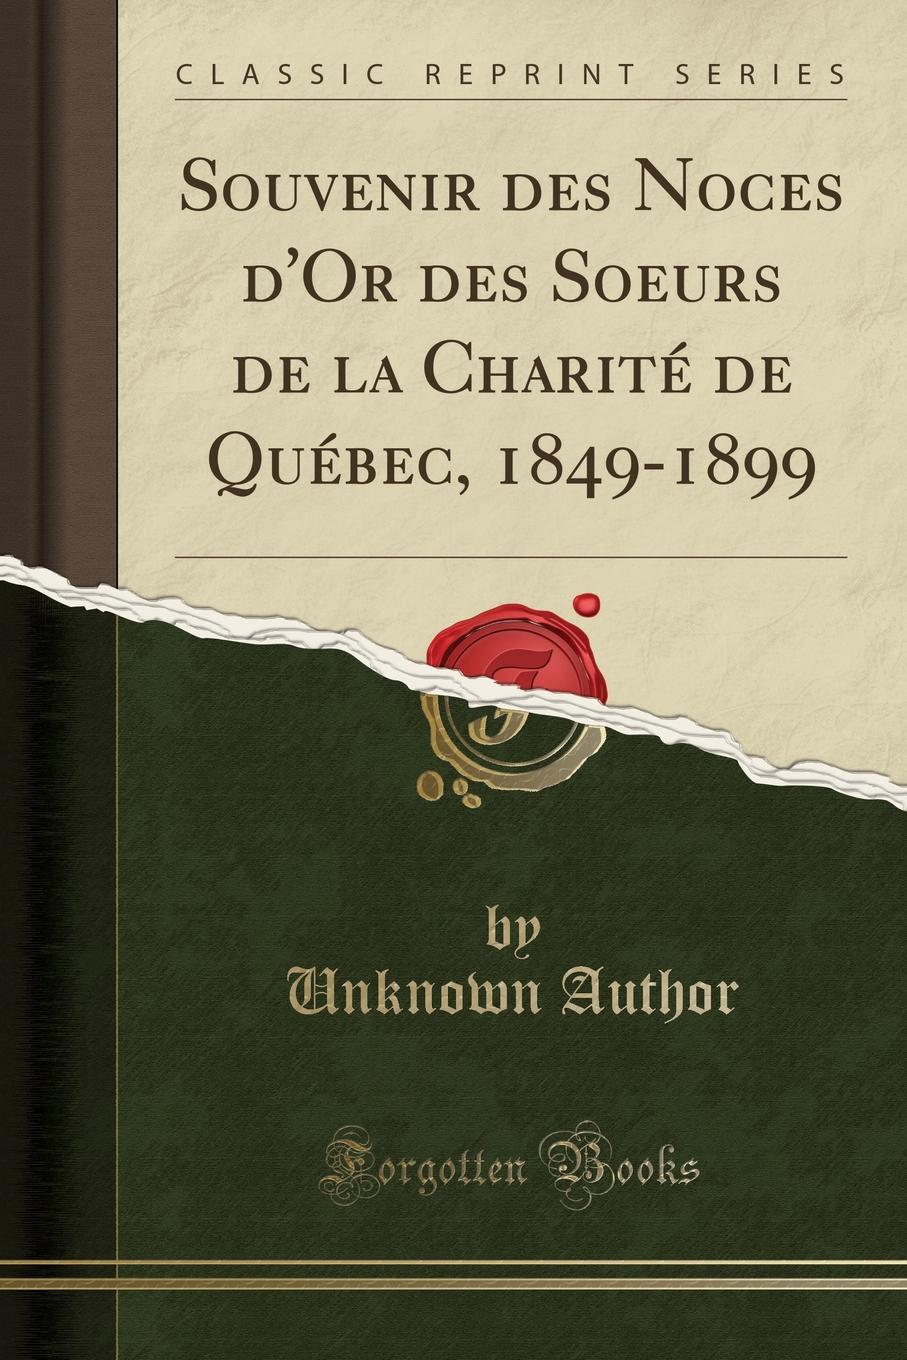 Unknown Author Souvenir des Noces d.Or des Soeurs de la Charite de Quebec, 1849-1899 (Classic Reprint)